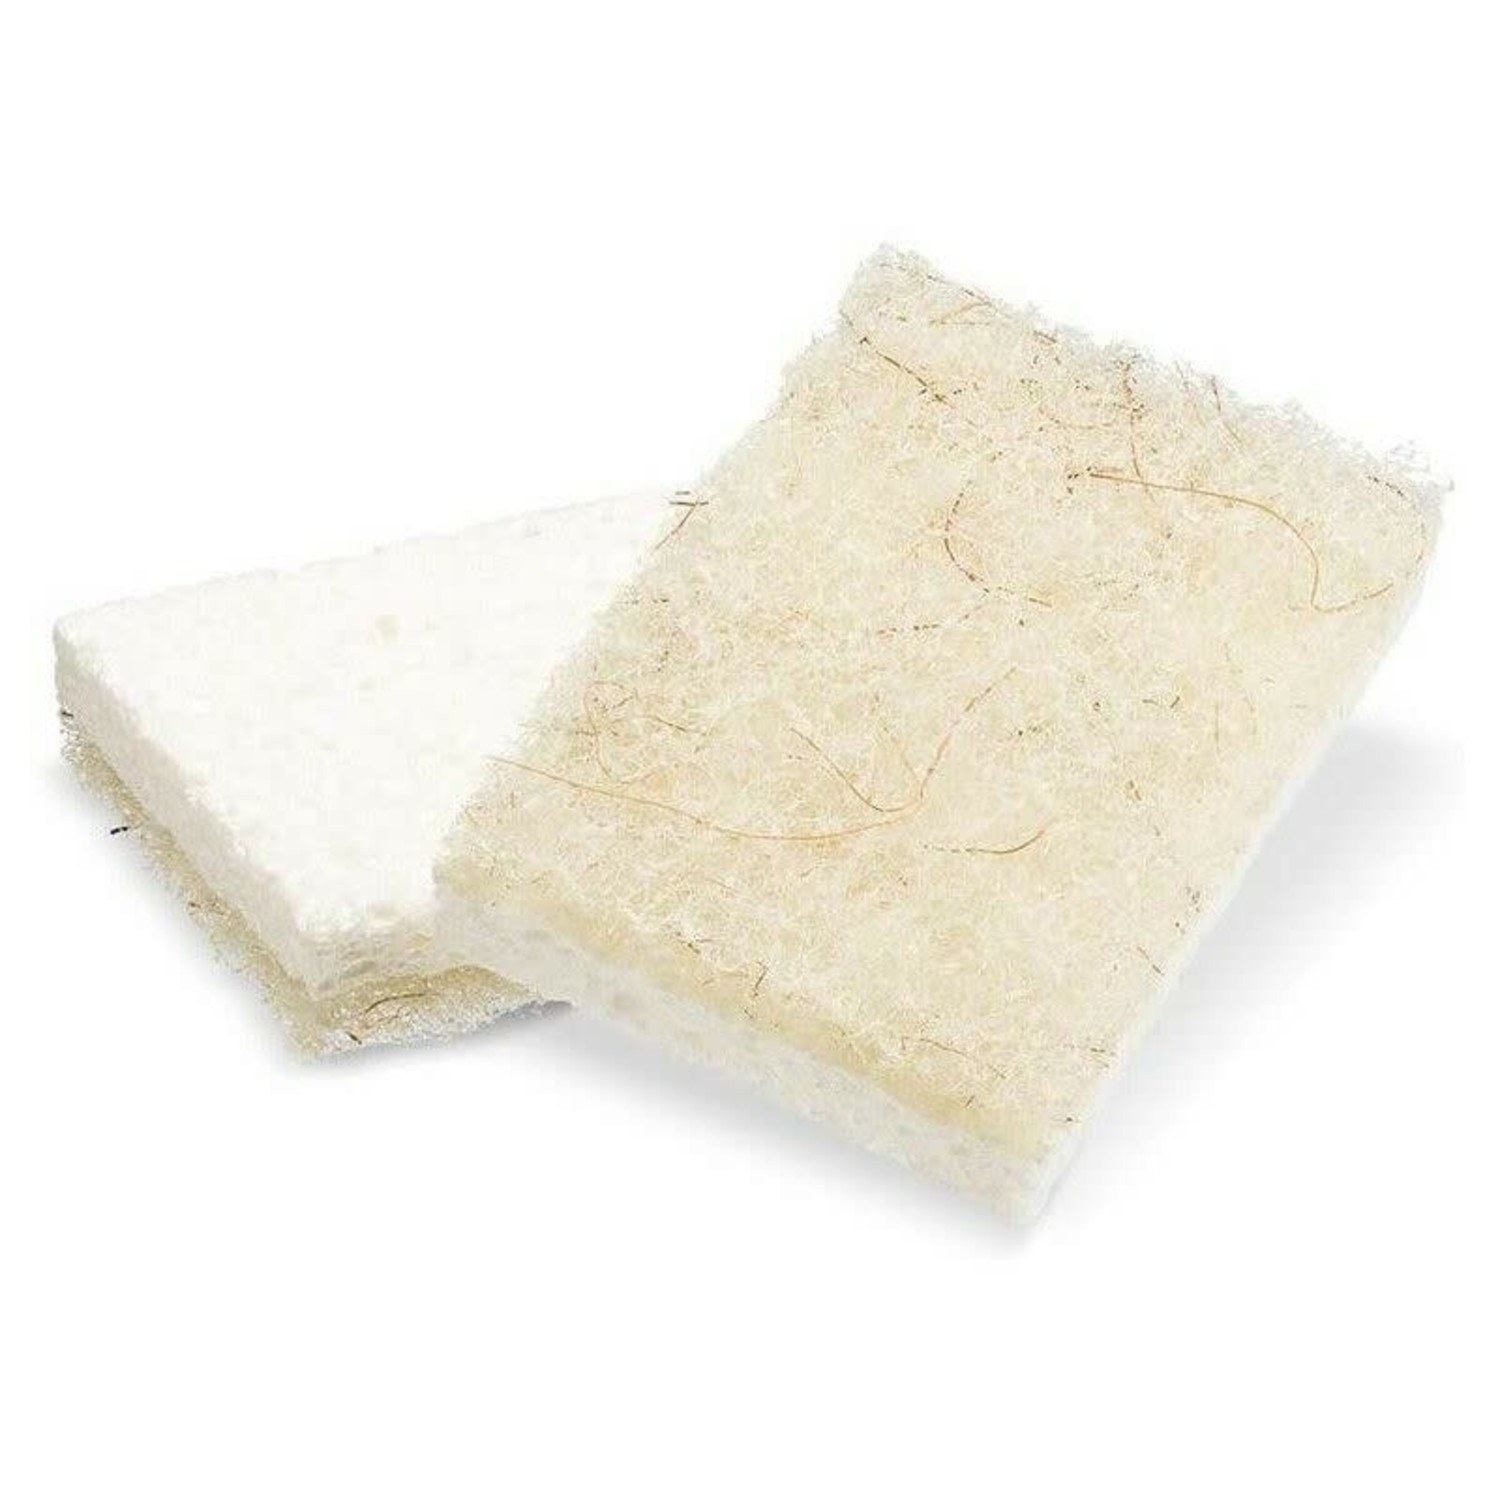 https://cdn.shoplightspeed.com/shops/633447/files/42830239/1500x4000x3/heavy-duty-coconut-sponges-with-scour-pads-set-of.jpg